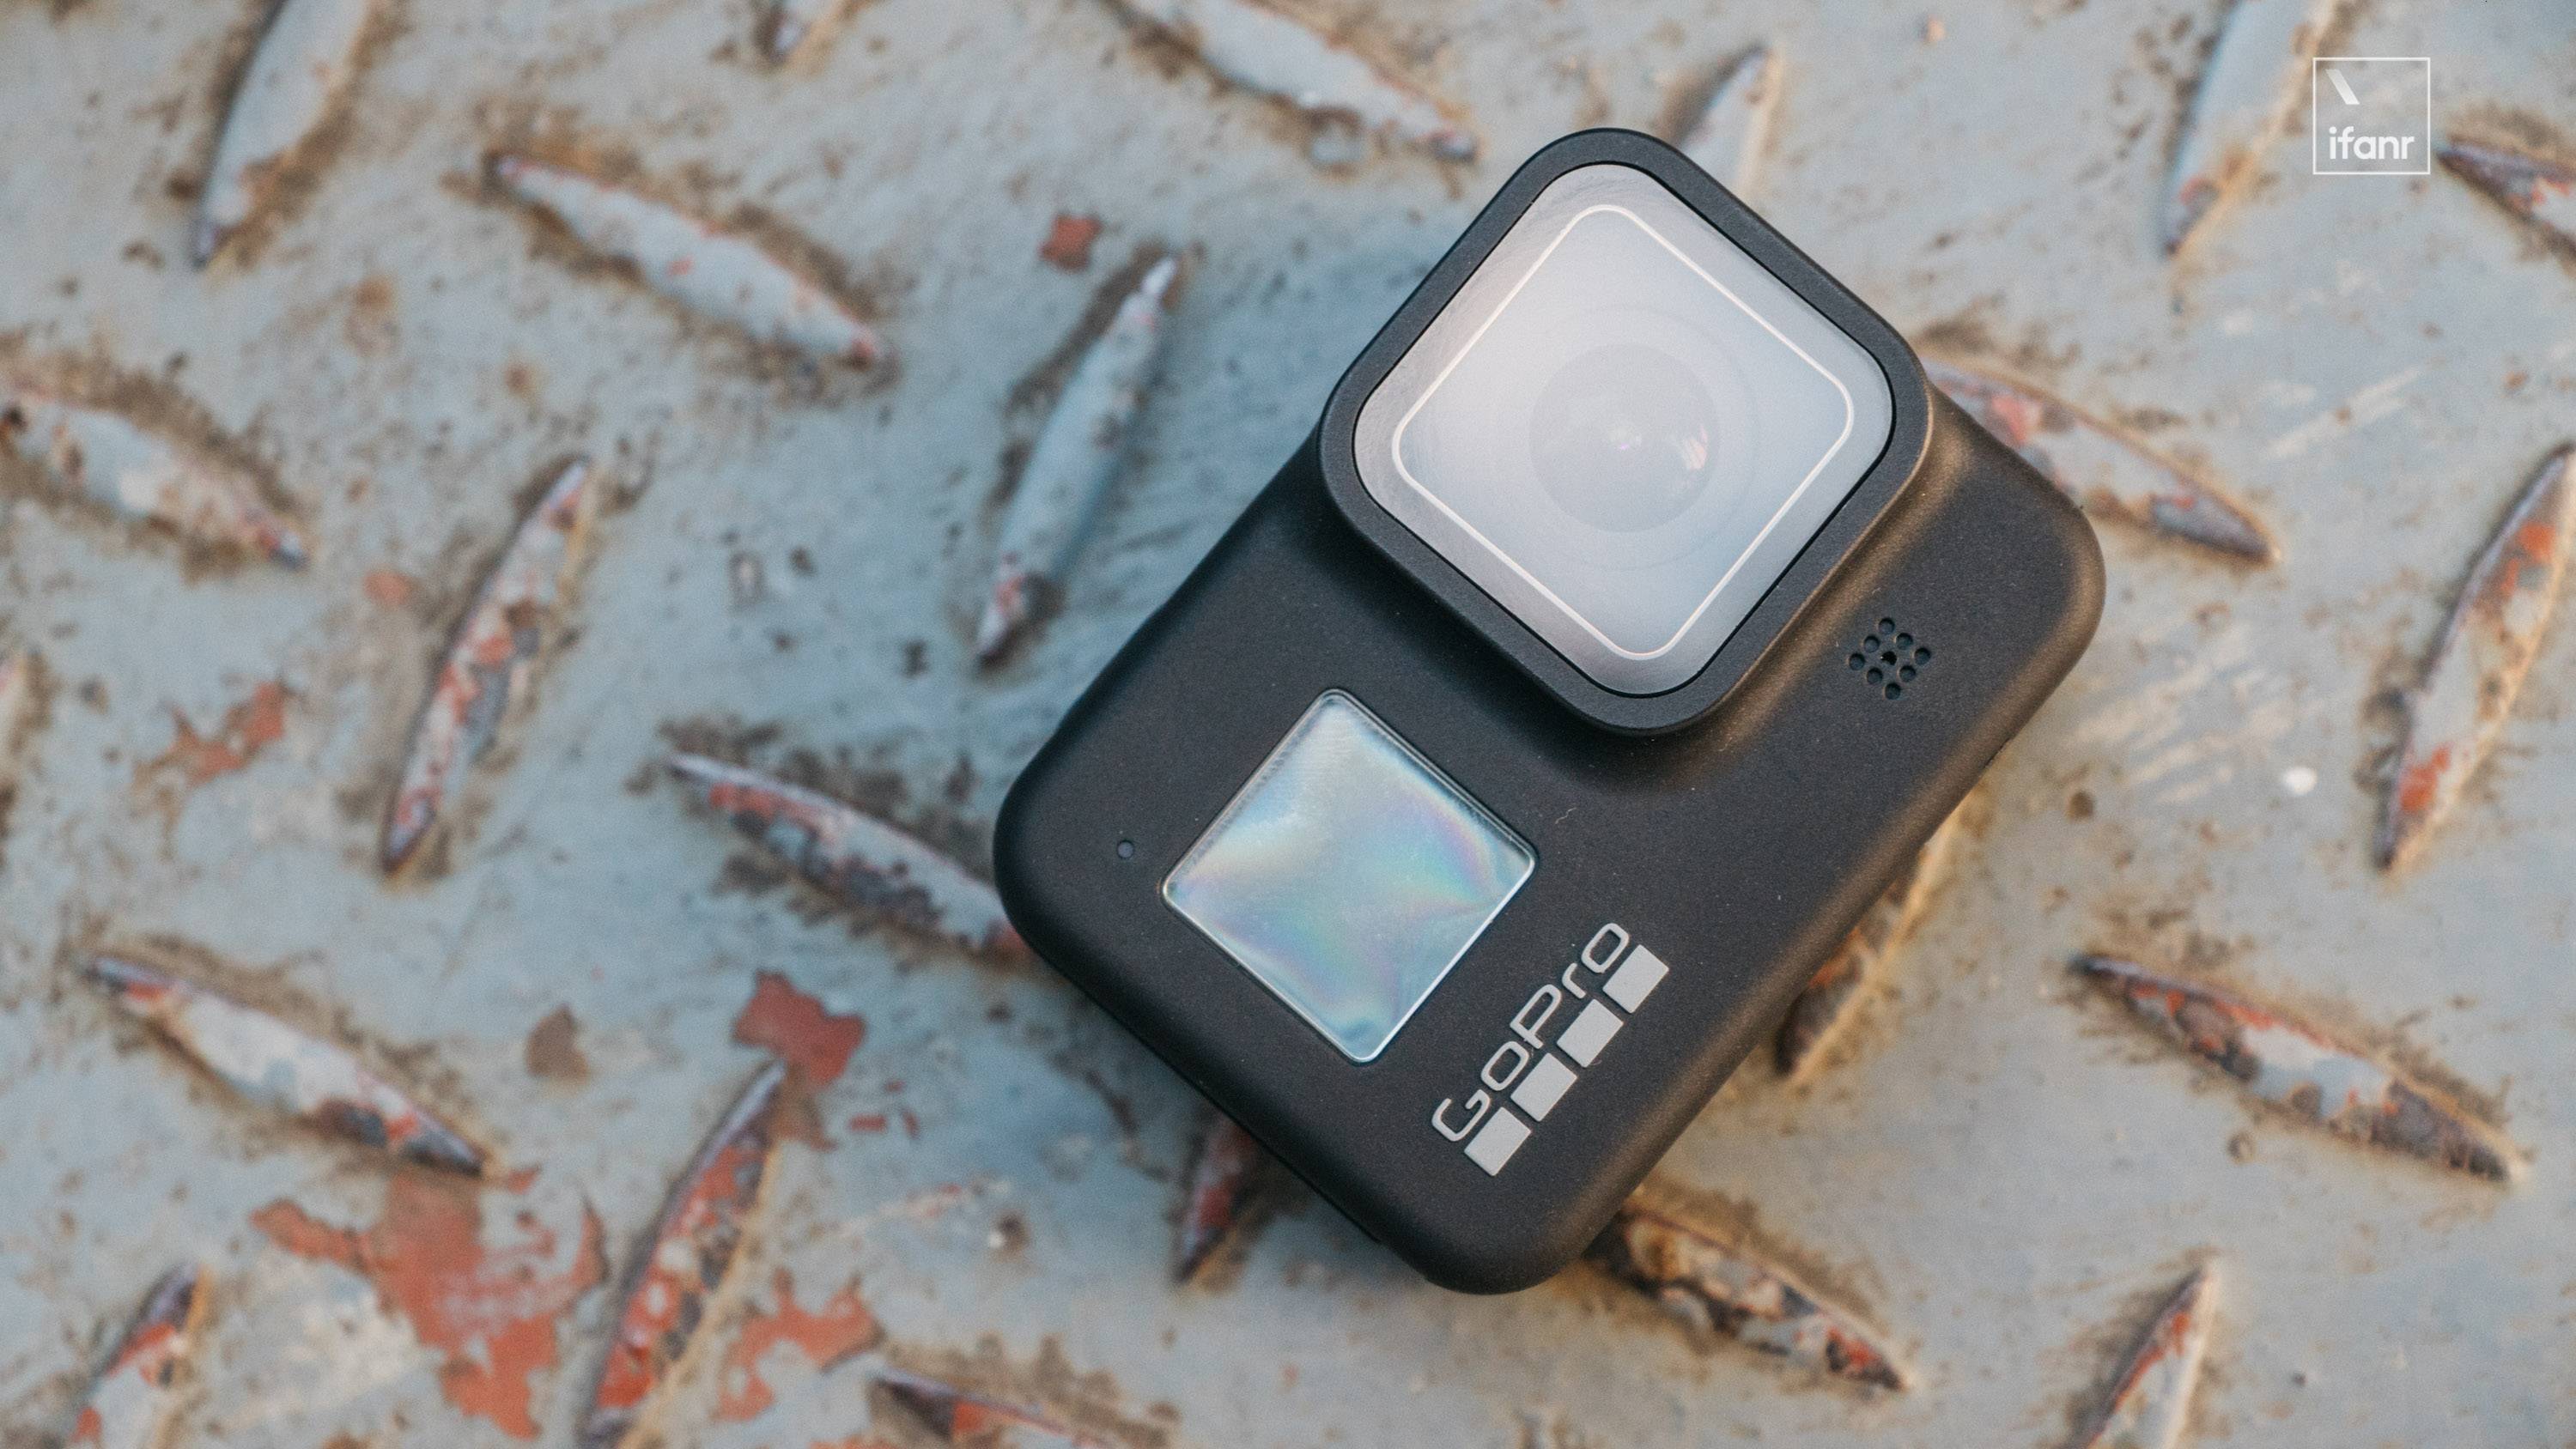 首发 Gopro Hero8 Black 评测 3198 元 这就是地表最稳运动相机 爱范儿